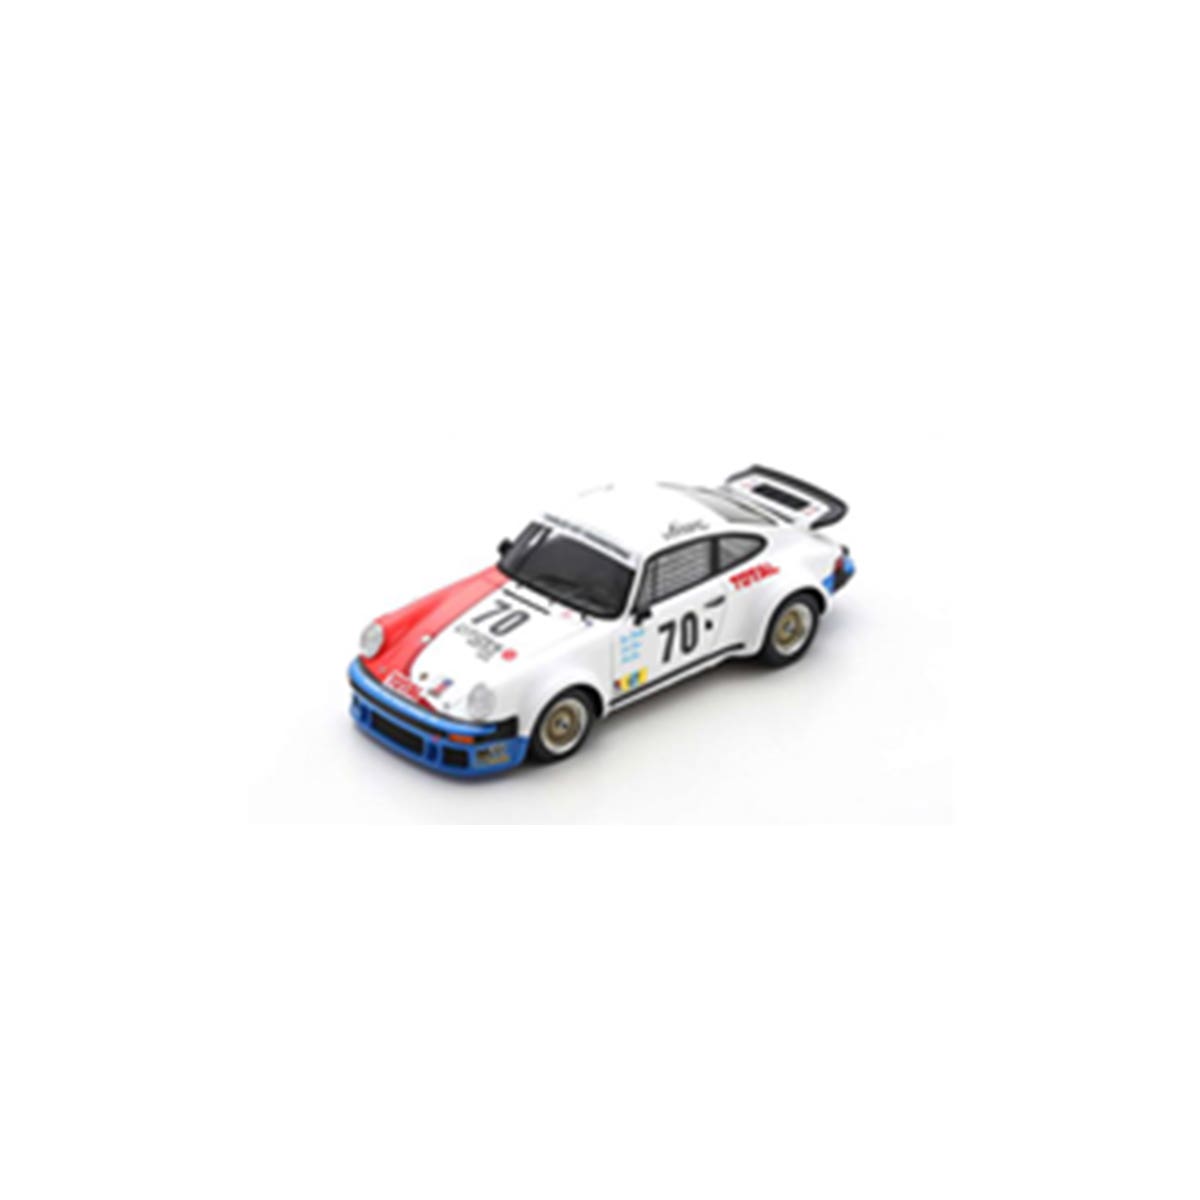 Porsche 934 No.70 24H Le Mans 1976 - "Beurlys" - N. Faure - J. Goss - 1:43 Scale Resin Model Car